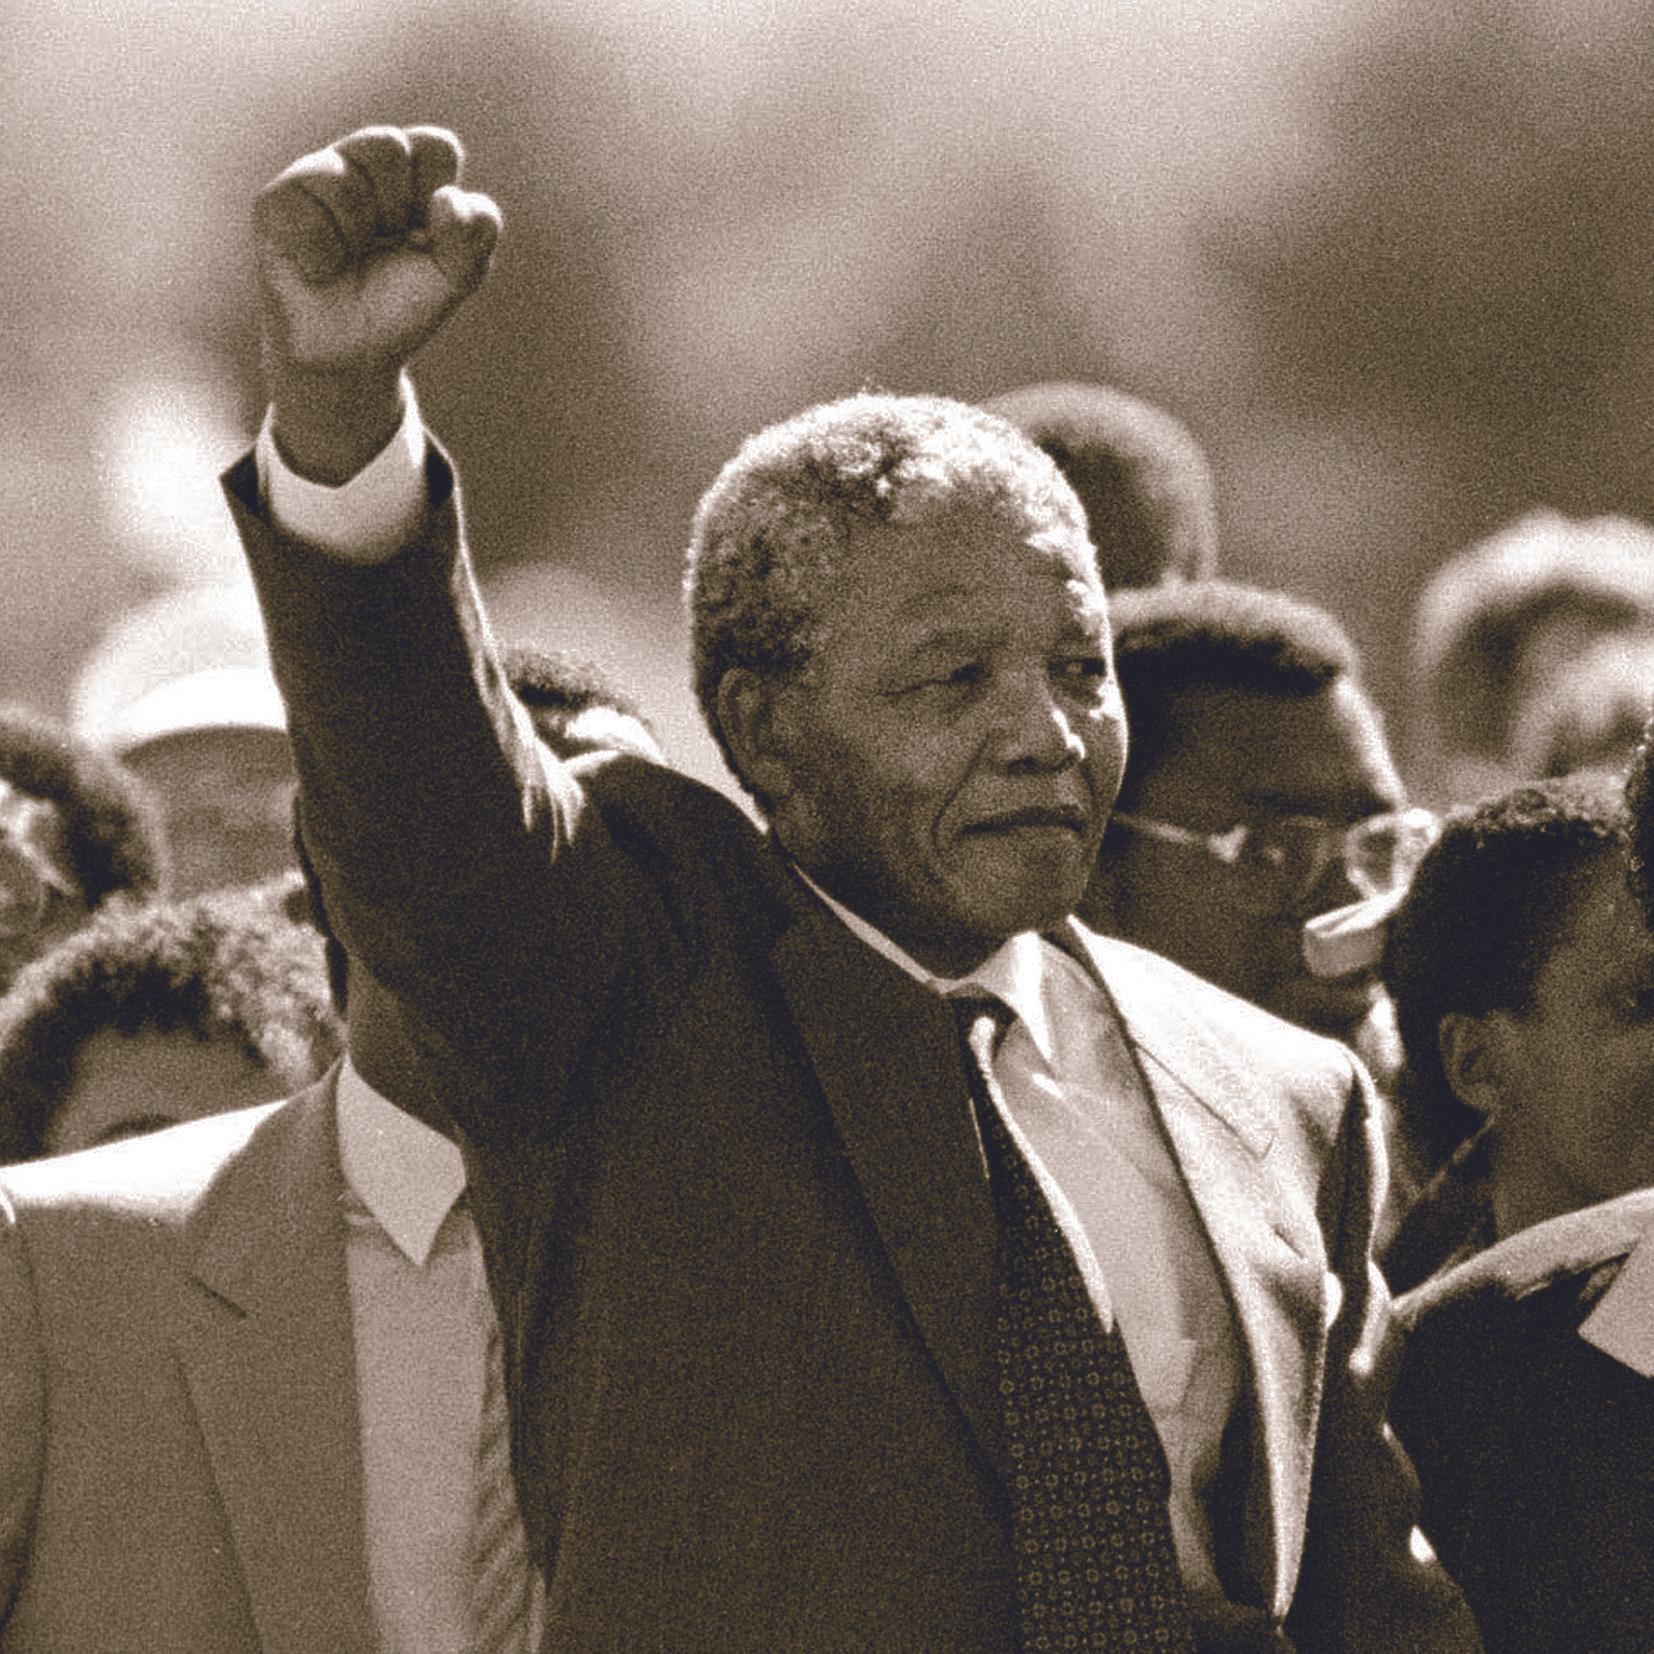 Thumbnail for "Nelson Mandela at 100".